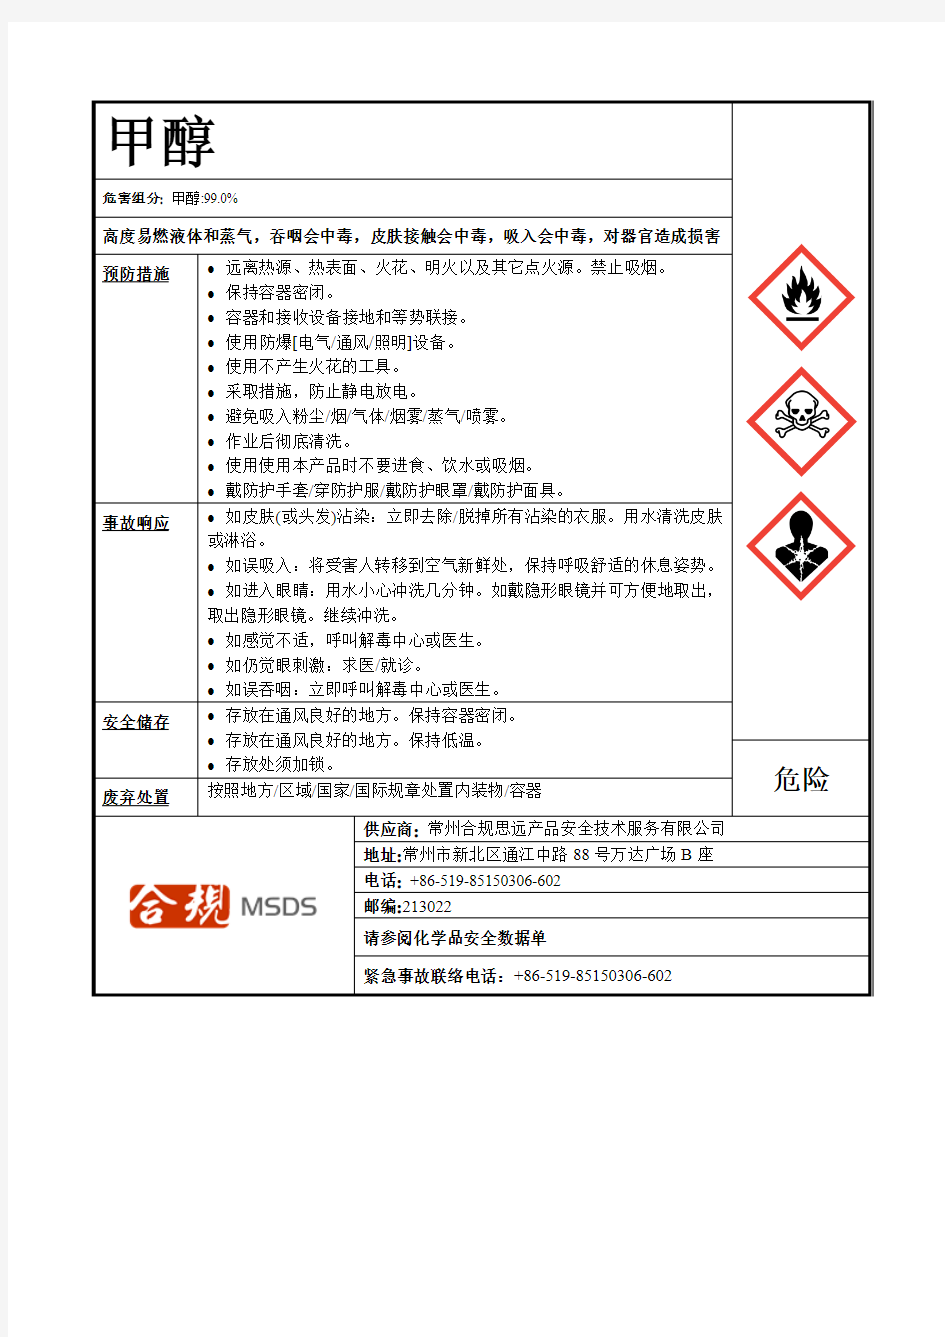 甲醇安全标签-联合国GHS版-中文